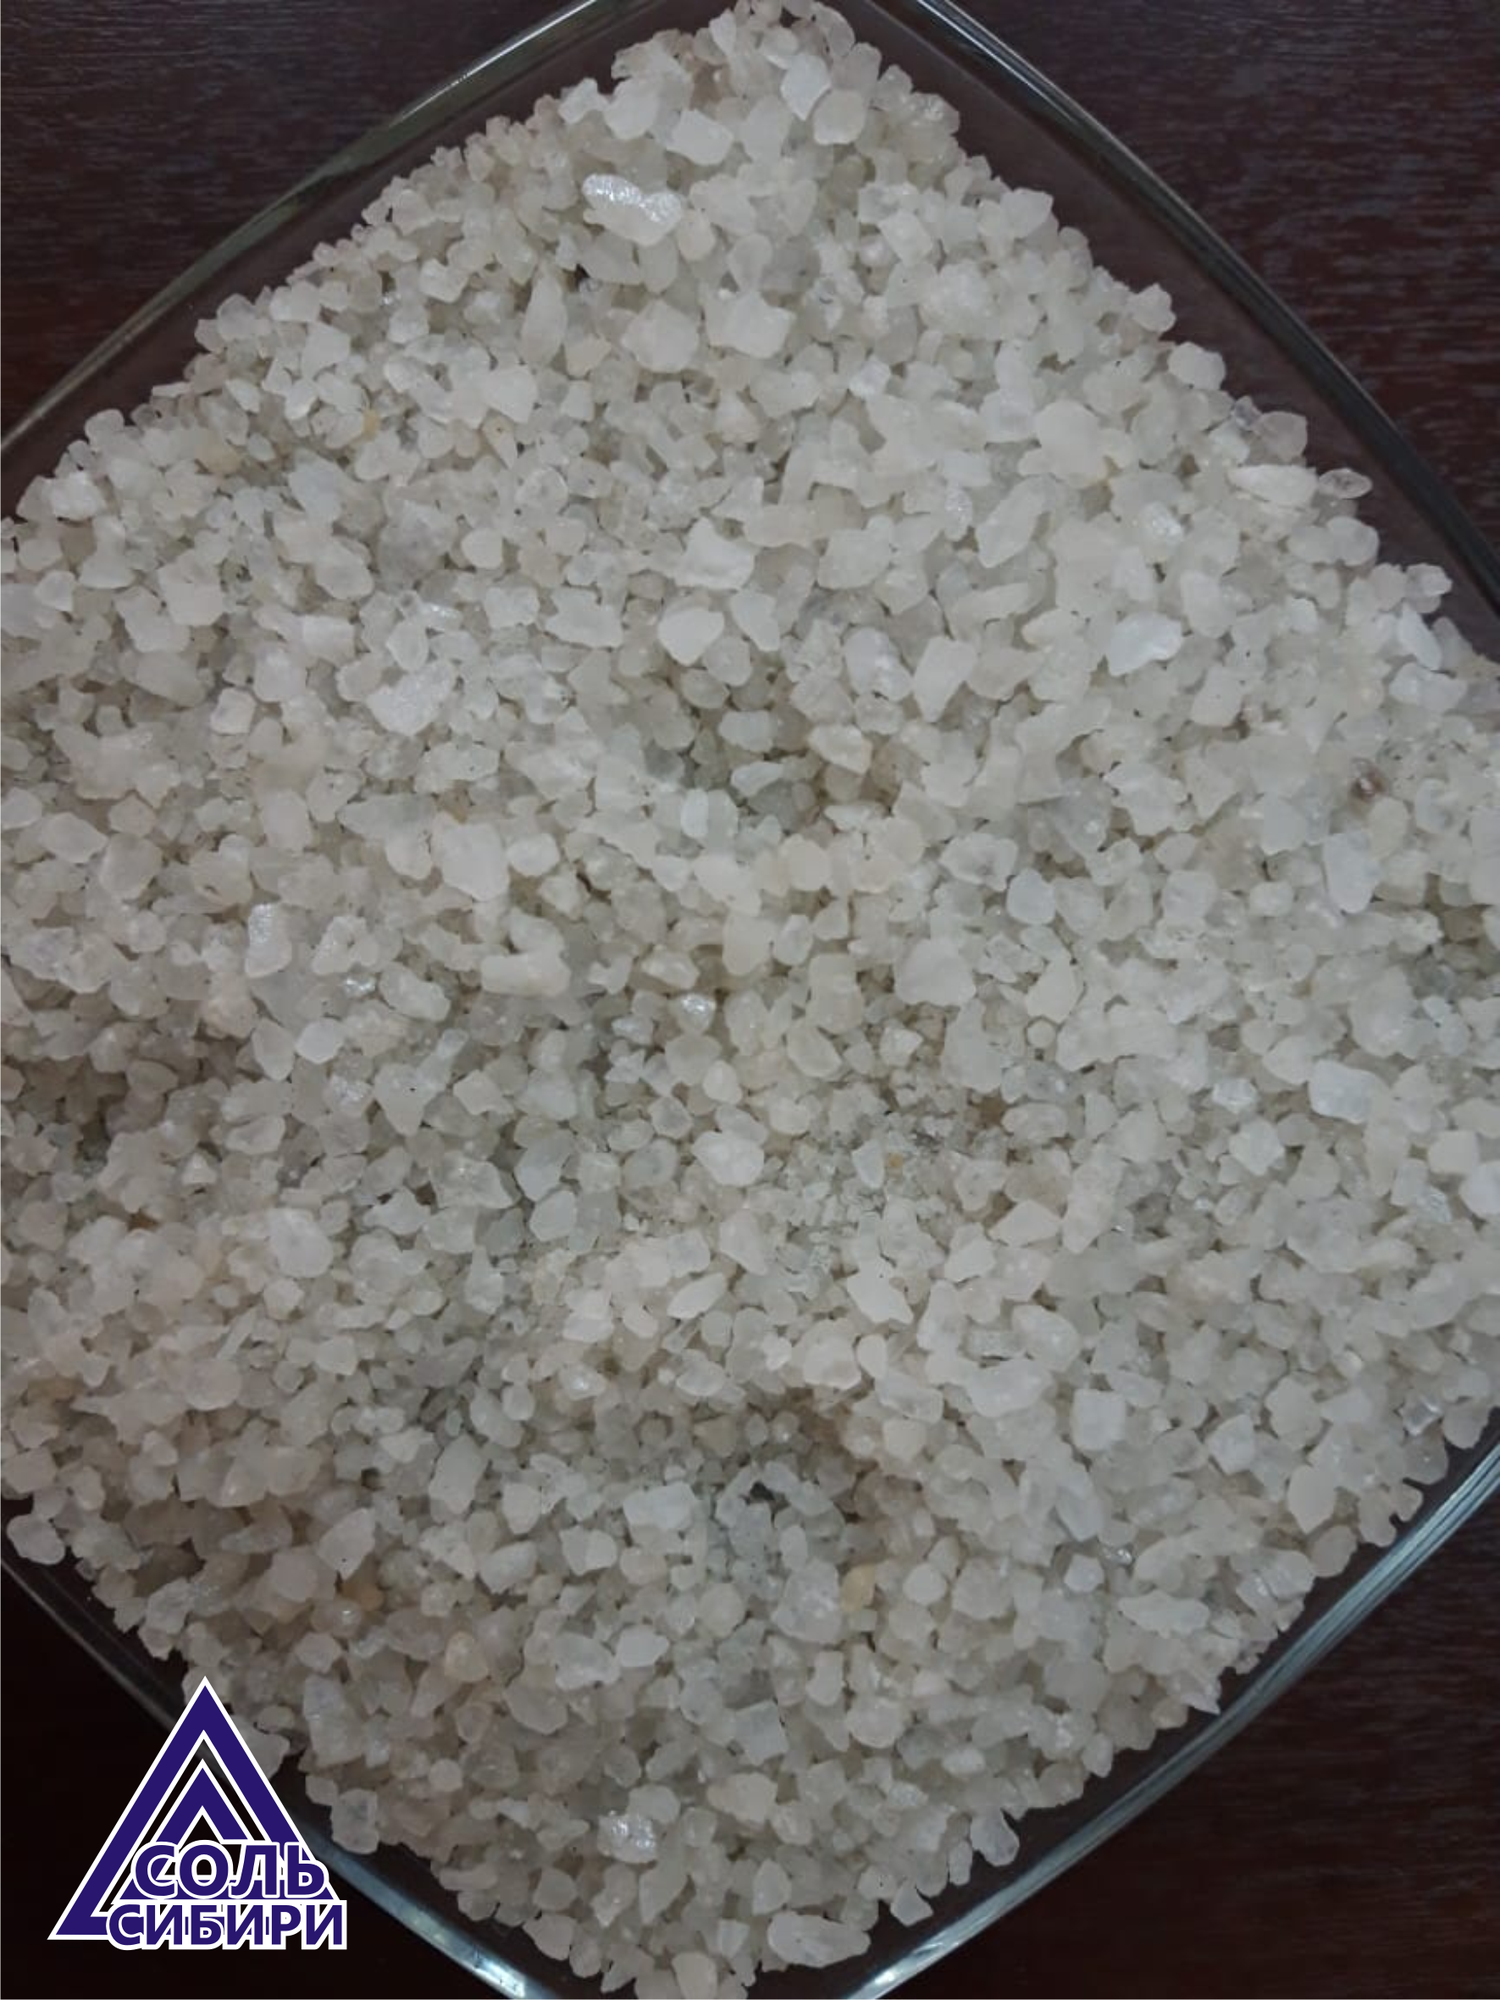 Соль пищевая 2 сорт 2-3 помол. Мешки 25 кг, 50 кг (Бурсоль).